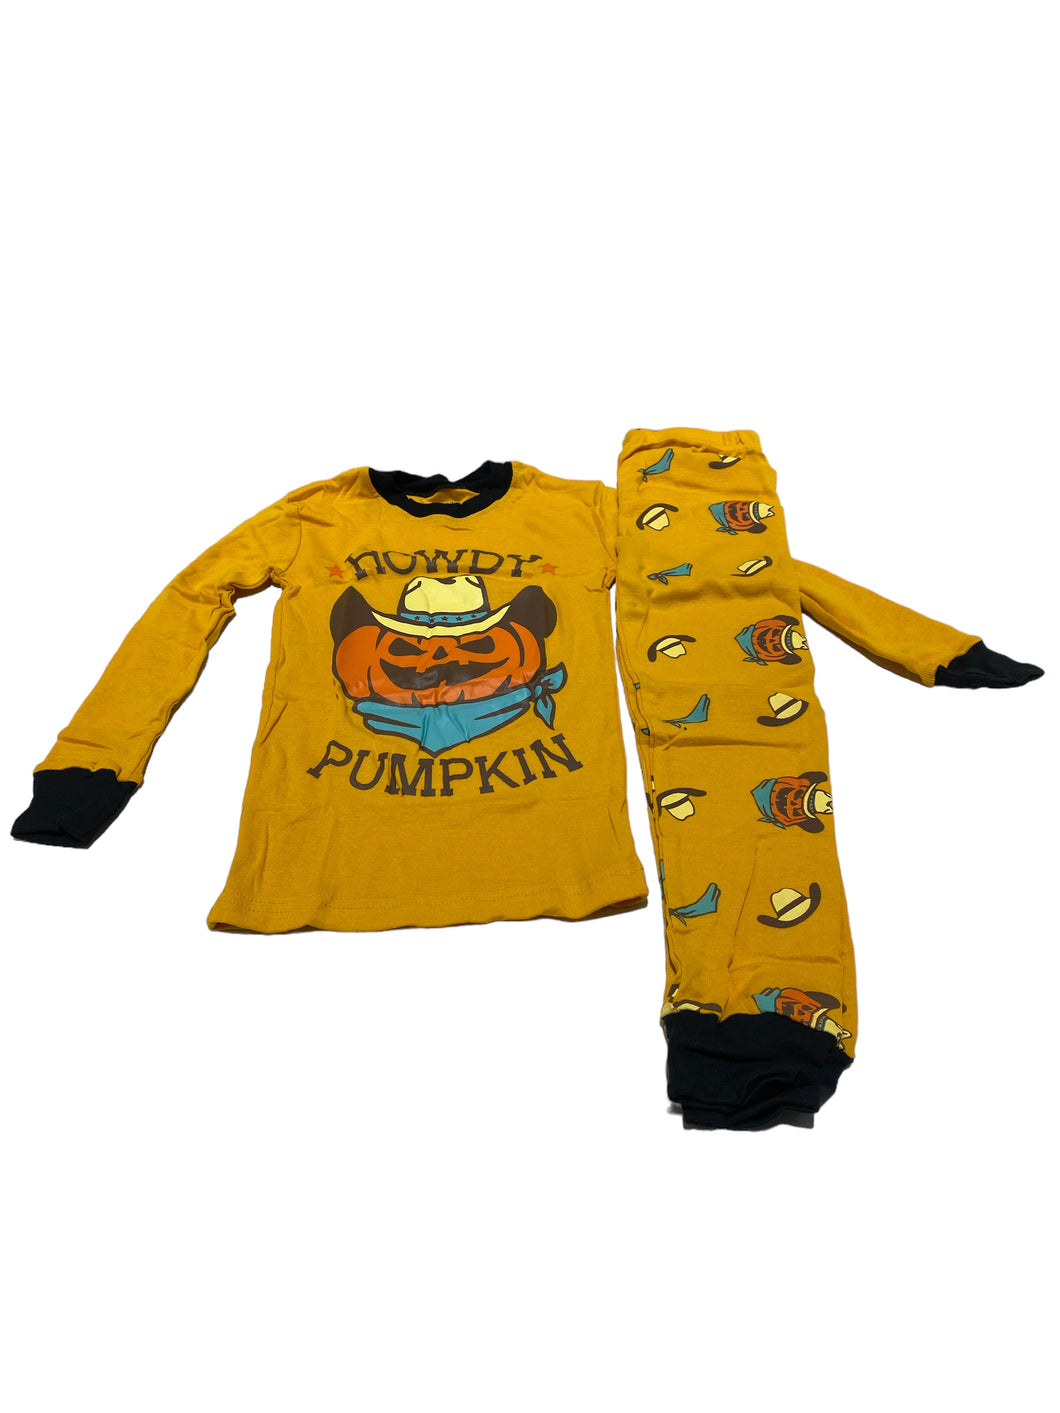 Daughter Queen Boy's Pumpkin Pajamas, Size 4T - FreemanLiquidators - [product_description]